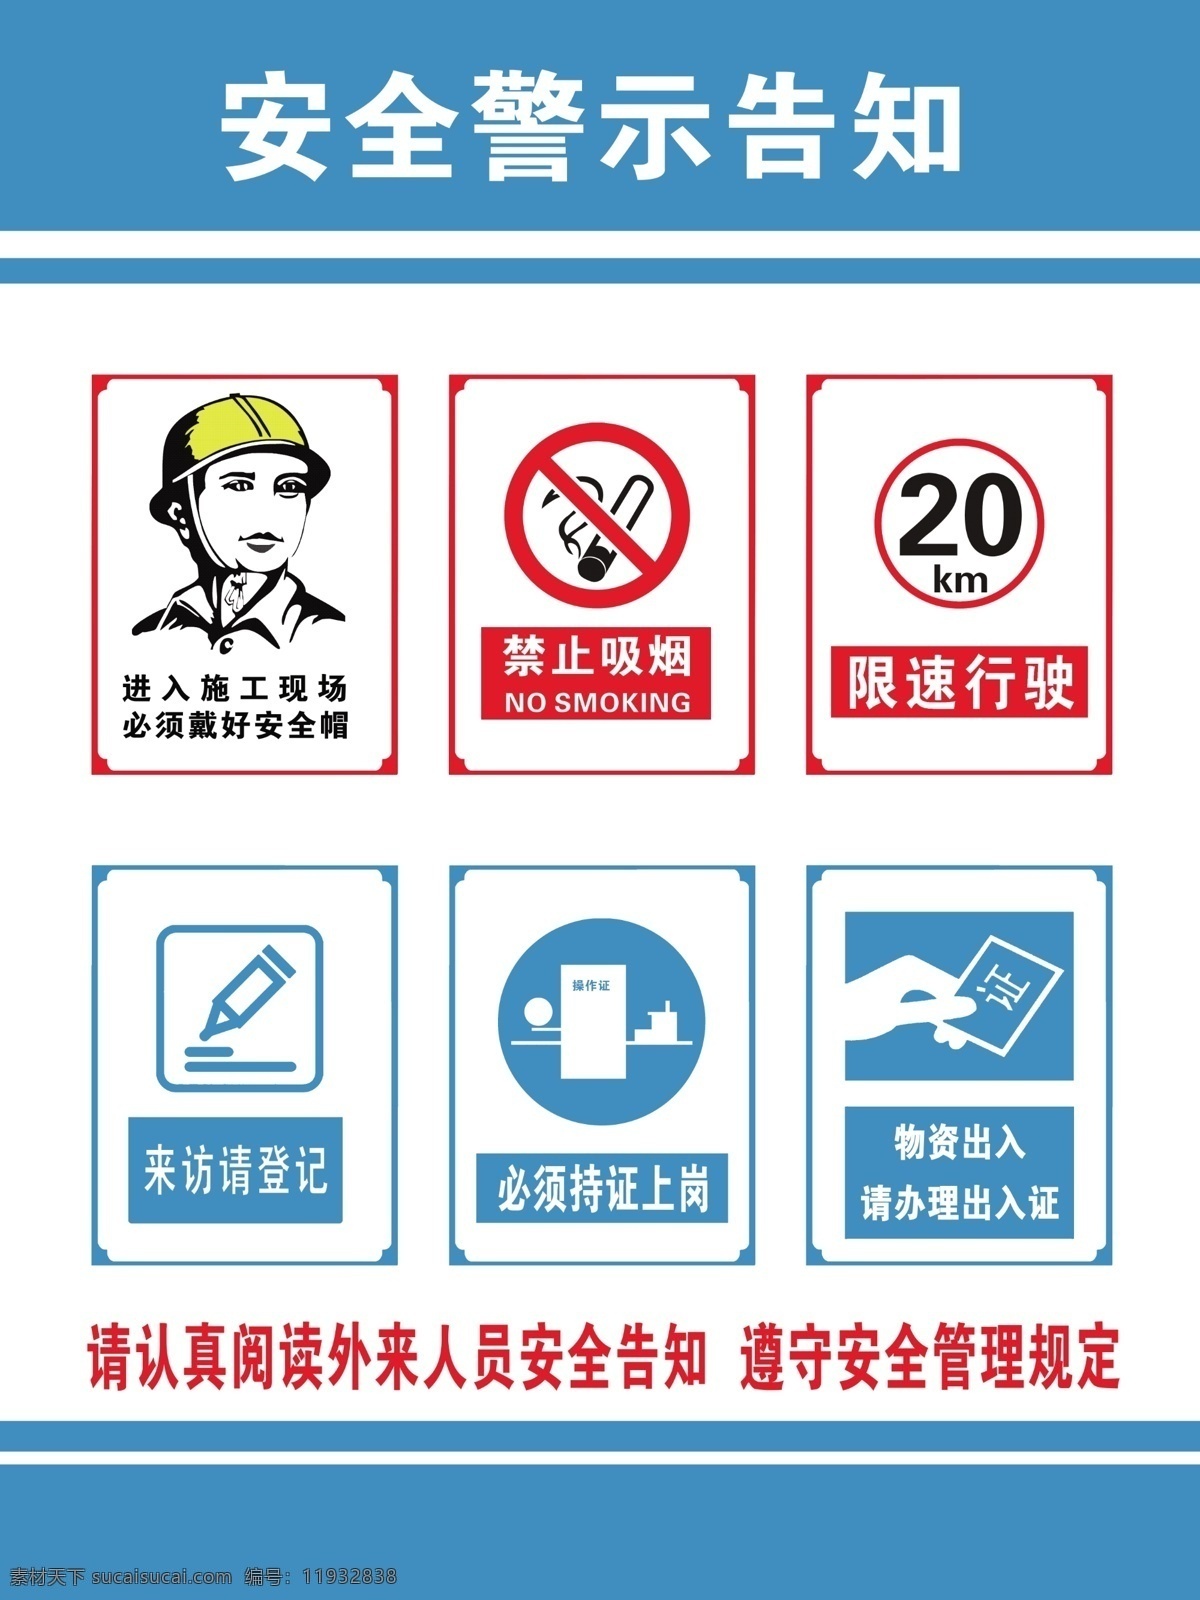 安全 警示 告知 牌 禁止吸烟 限速行驶 来访登记 持证上岗 佩戴安全帽 安全警示告知 展板模板